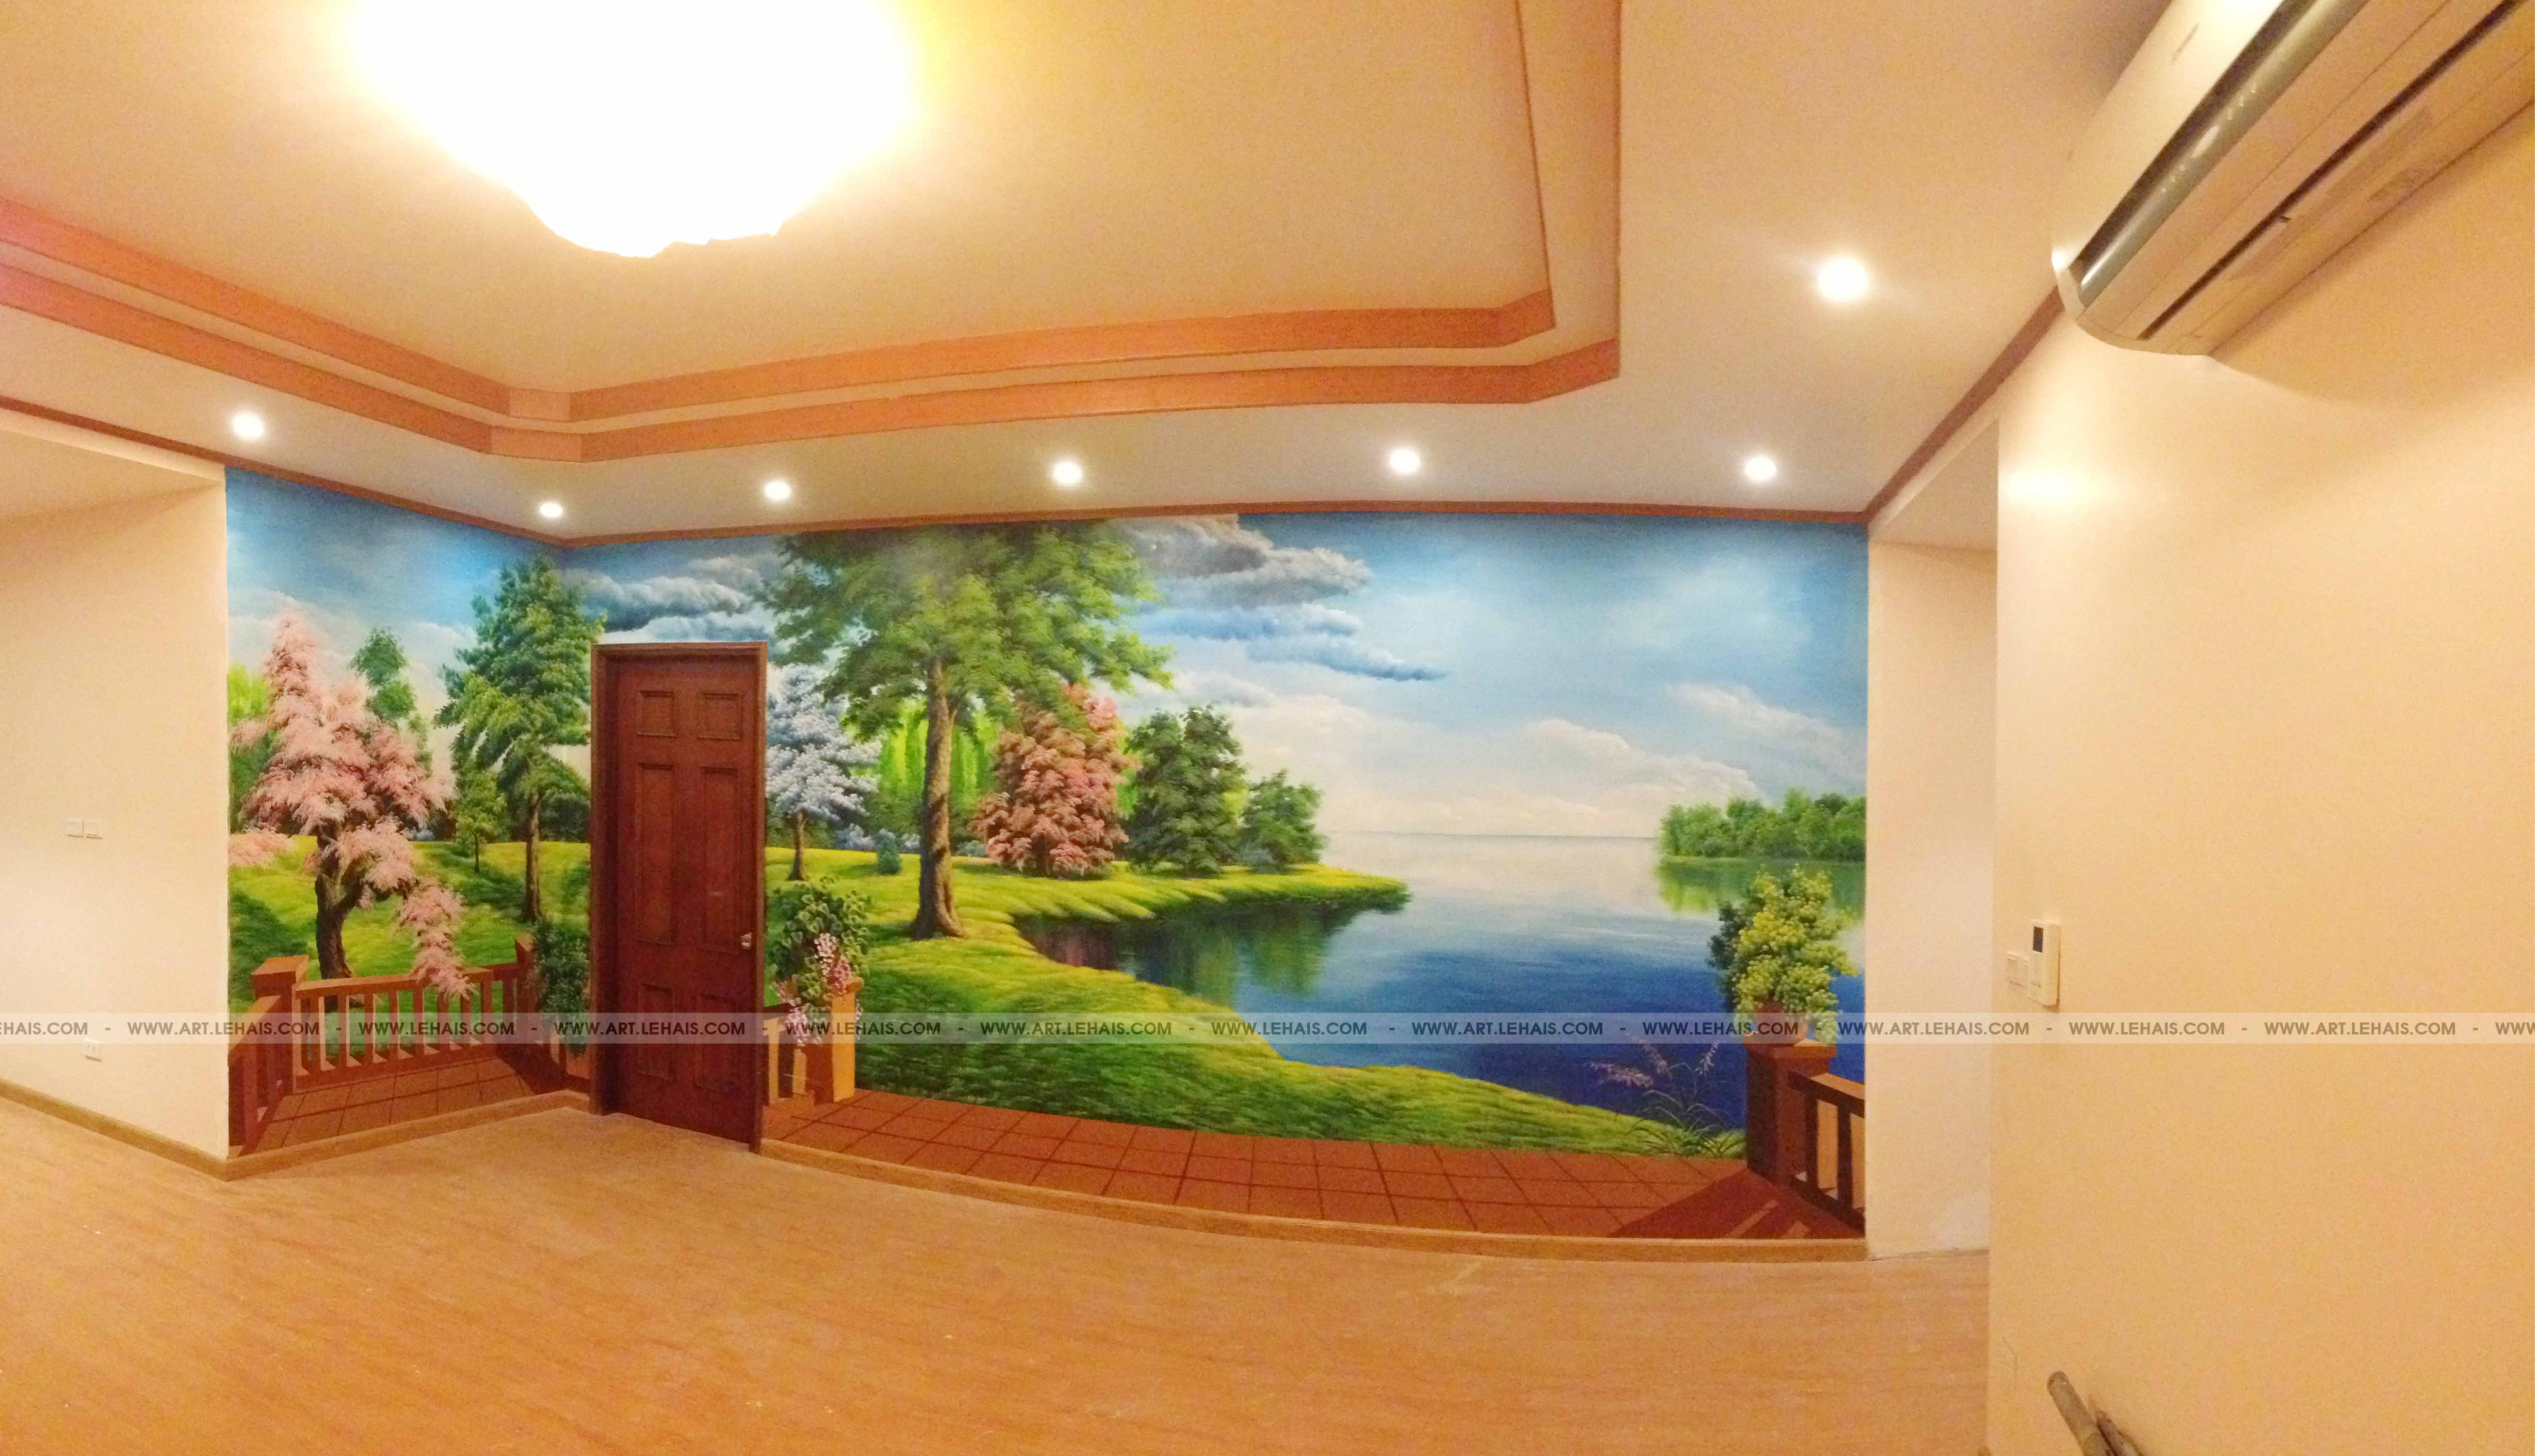 Vẽ tranh 3D phong cảnh  tại gia đình ở 29T2 Hoàng Đạo Thúy, Hà Nội - TT46LHAR